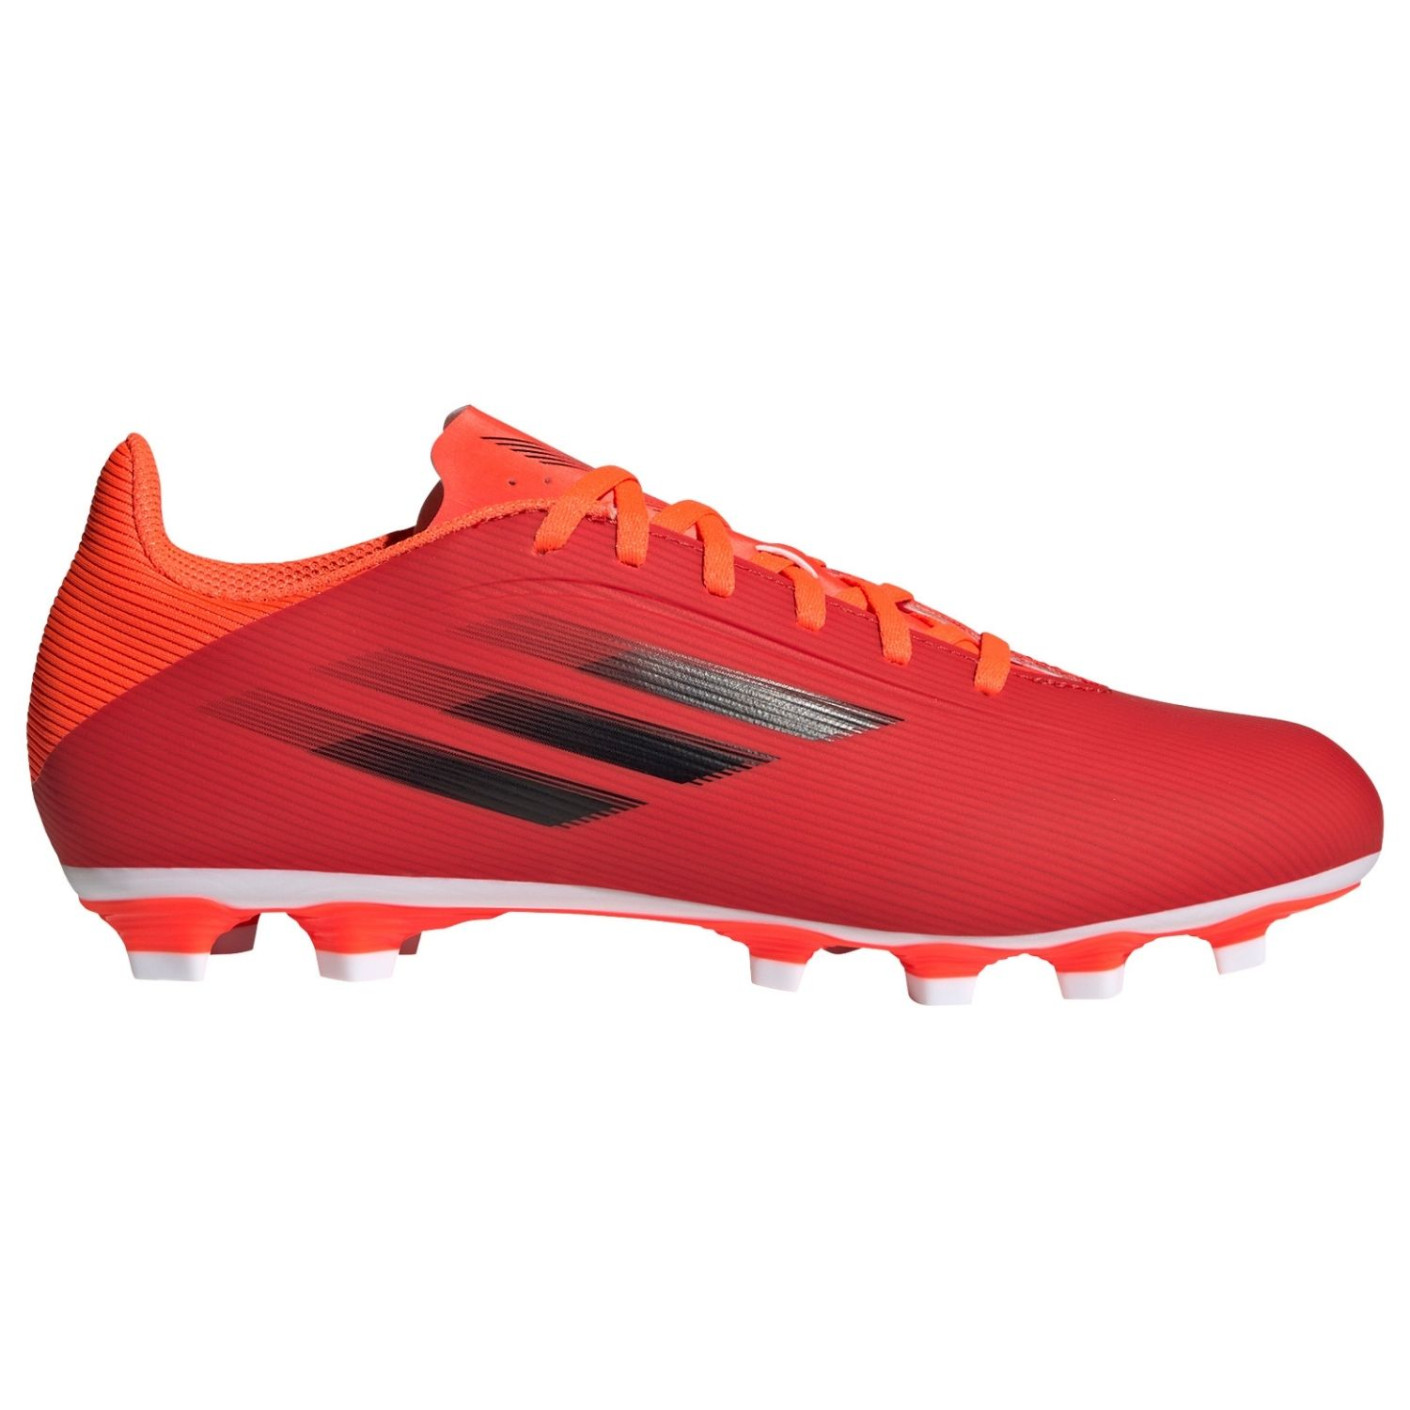 Chaussures de Foot adidas X Speedflow .4 sur gazon artificiel (FxG) Rouge noir rouge